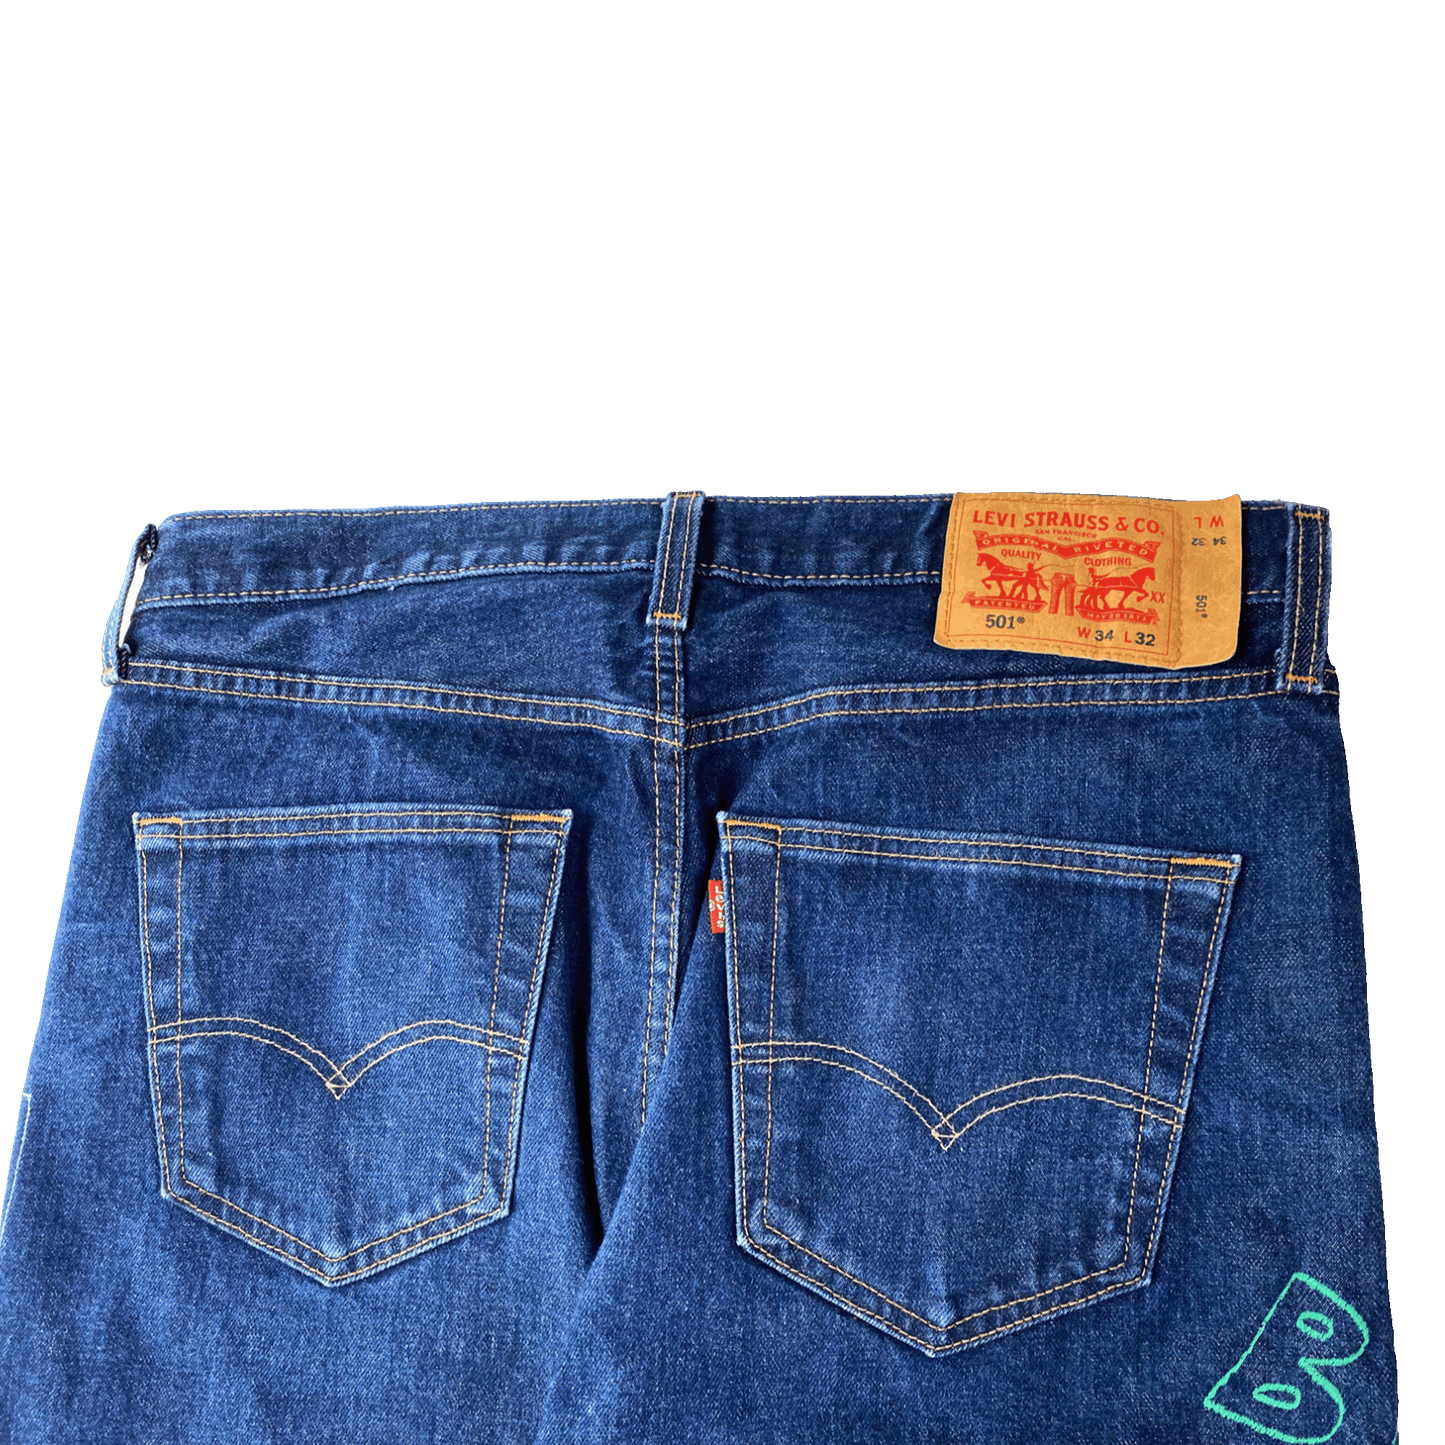 Nº71 Embroidery Jeans Vintage Levi's Denim Blue / Multicolour